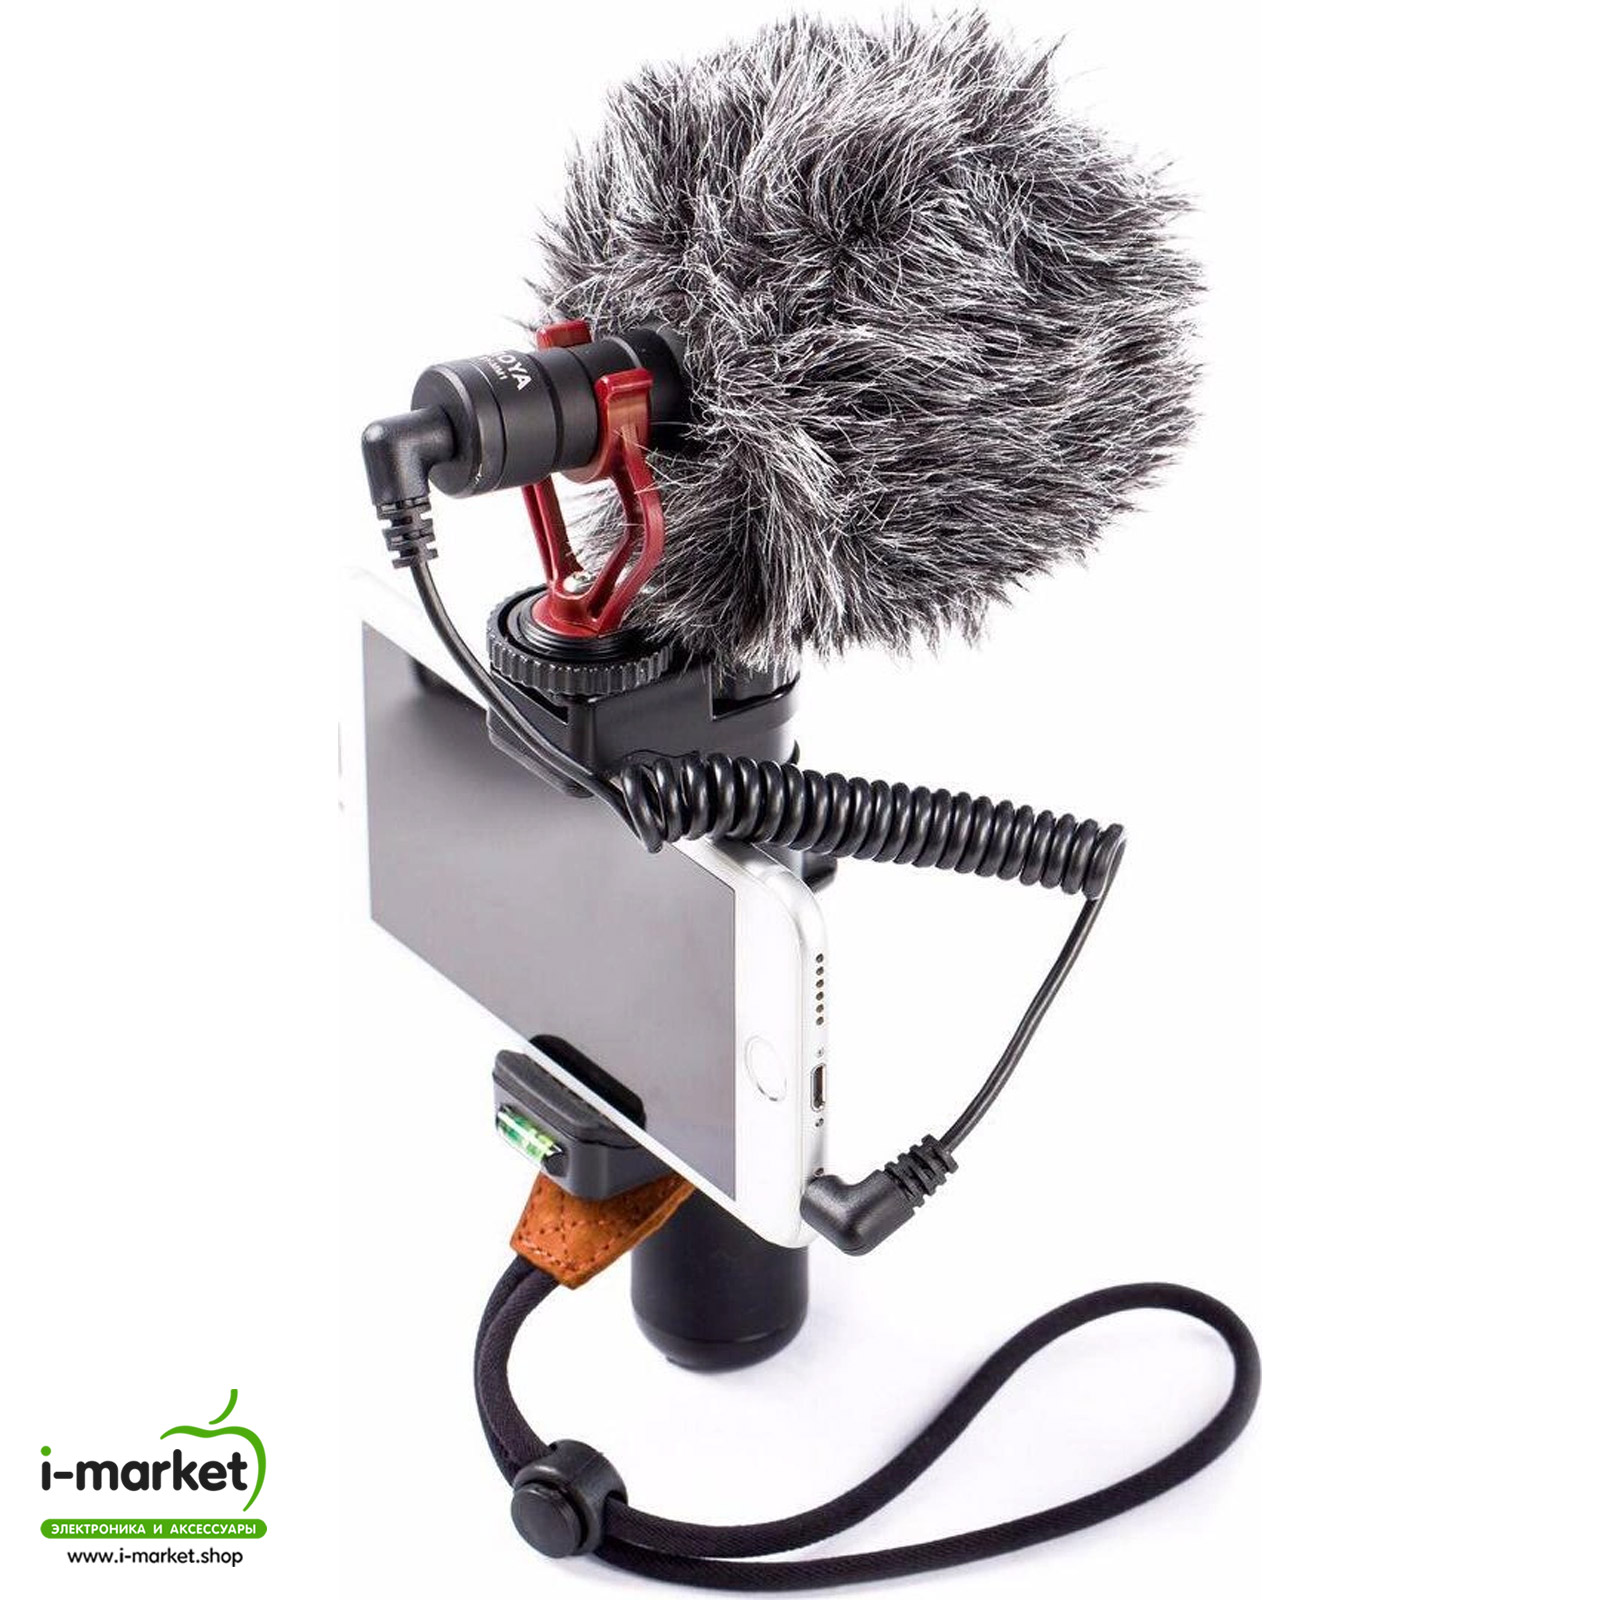 Направленный микрофон BOYA BY-MM1, витой кабель 1 метр, цвет черный.